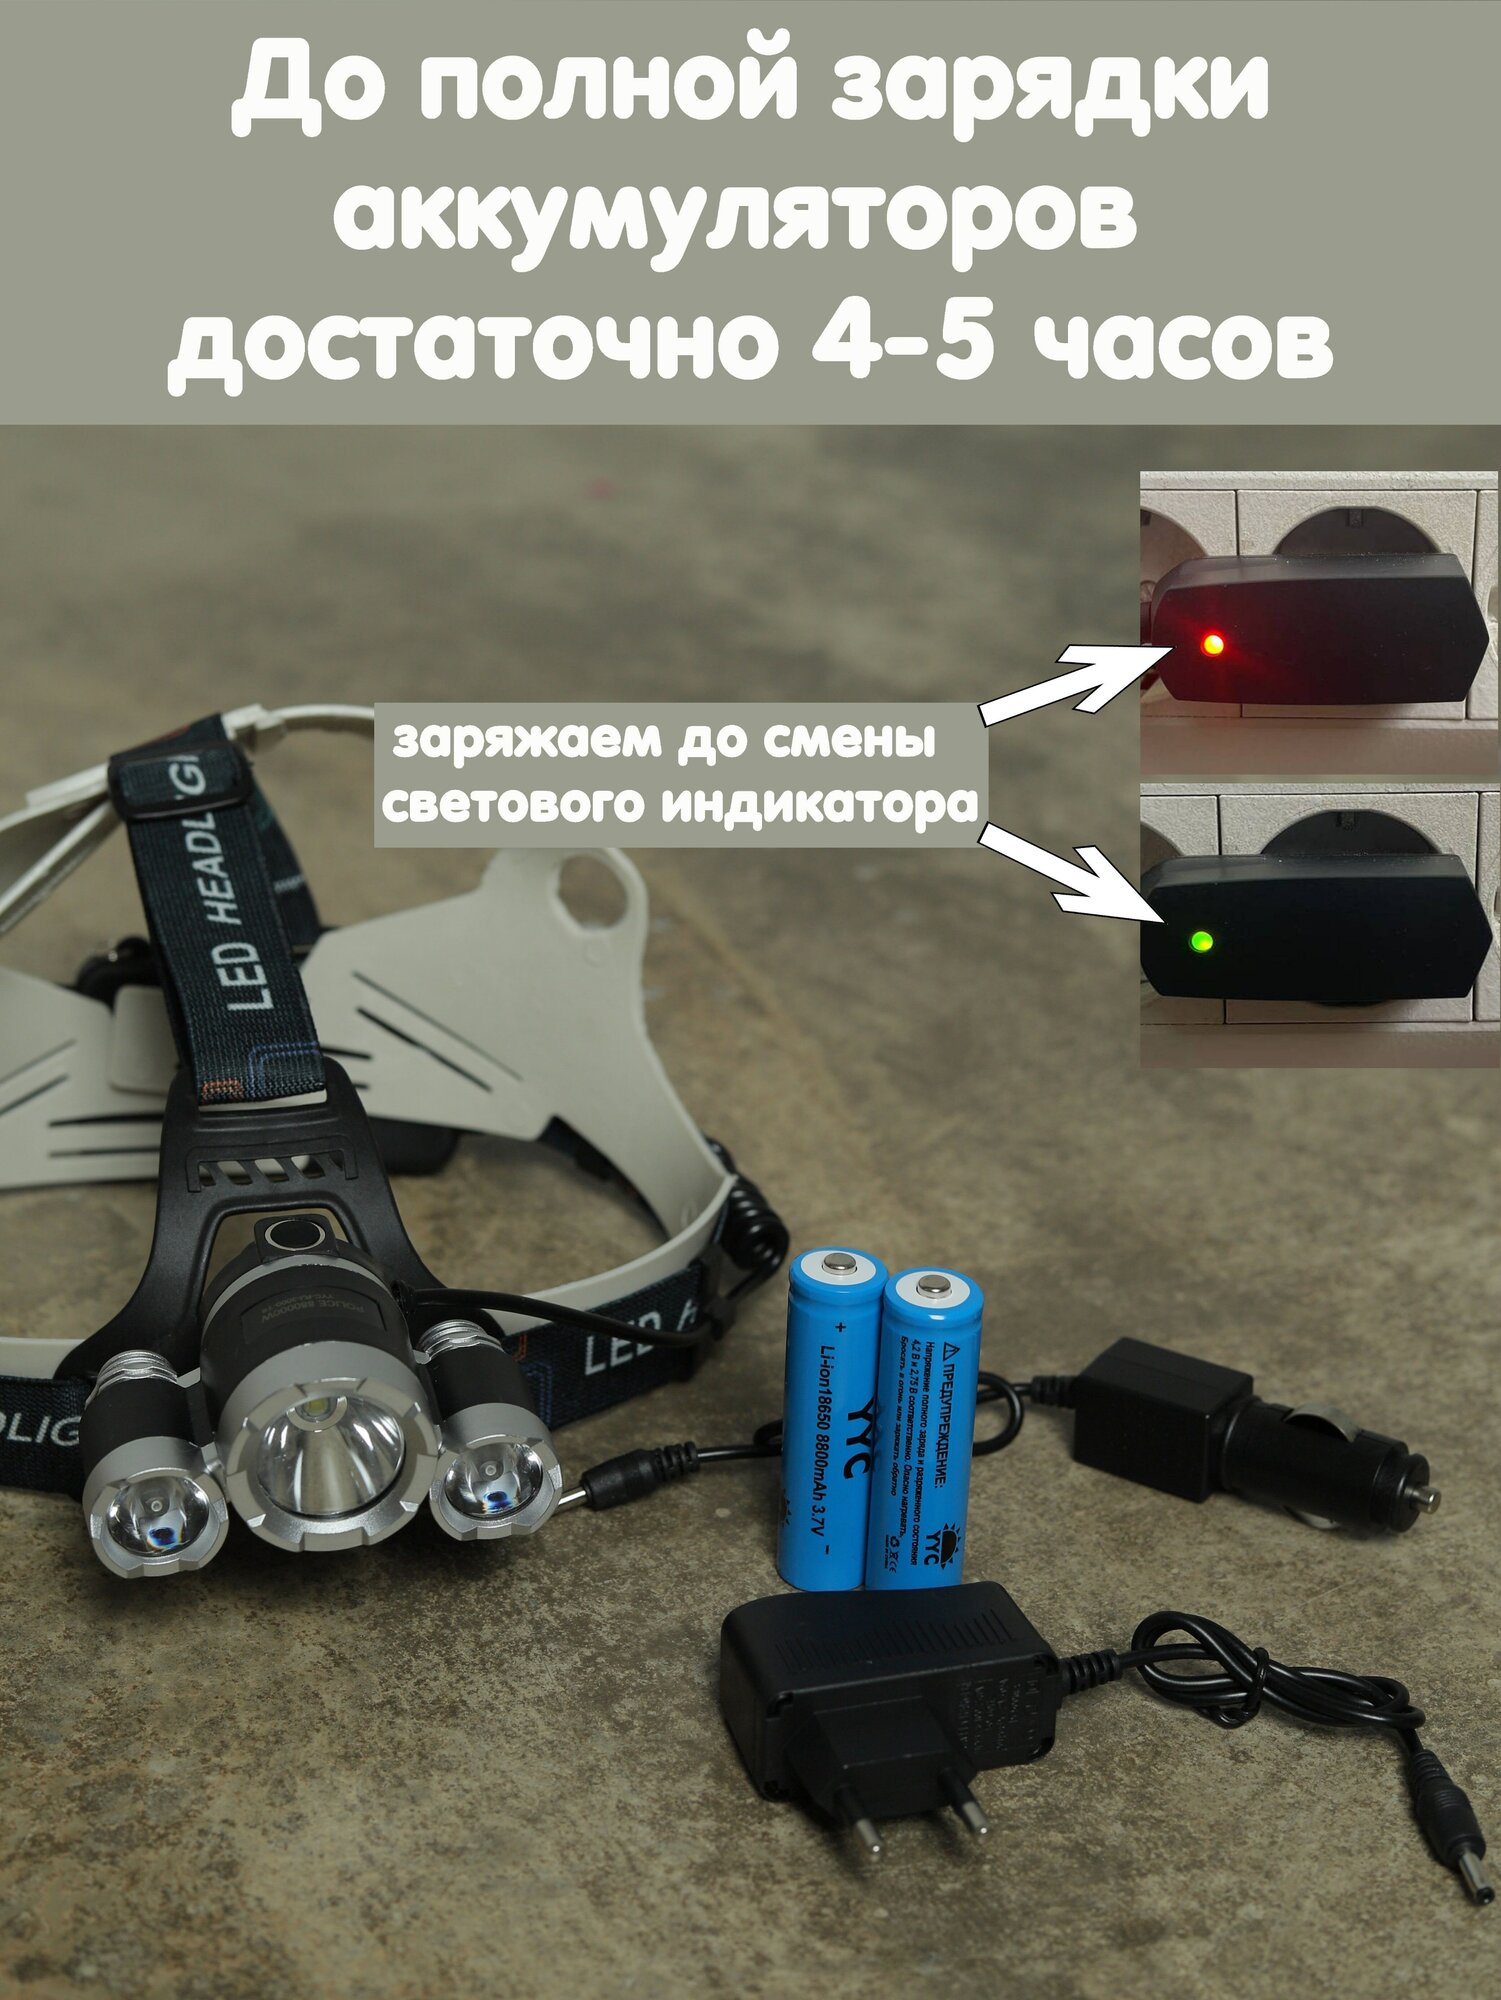 Налобный фонарь сверхяркий мощный светодиодный спортивный бытовой аккумуляторный с 4 режимами работы и 4 аккумуляторами 18650 для охоты и рыбалки